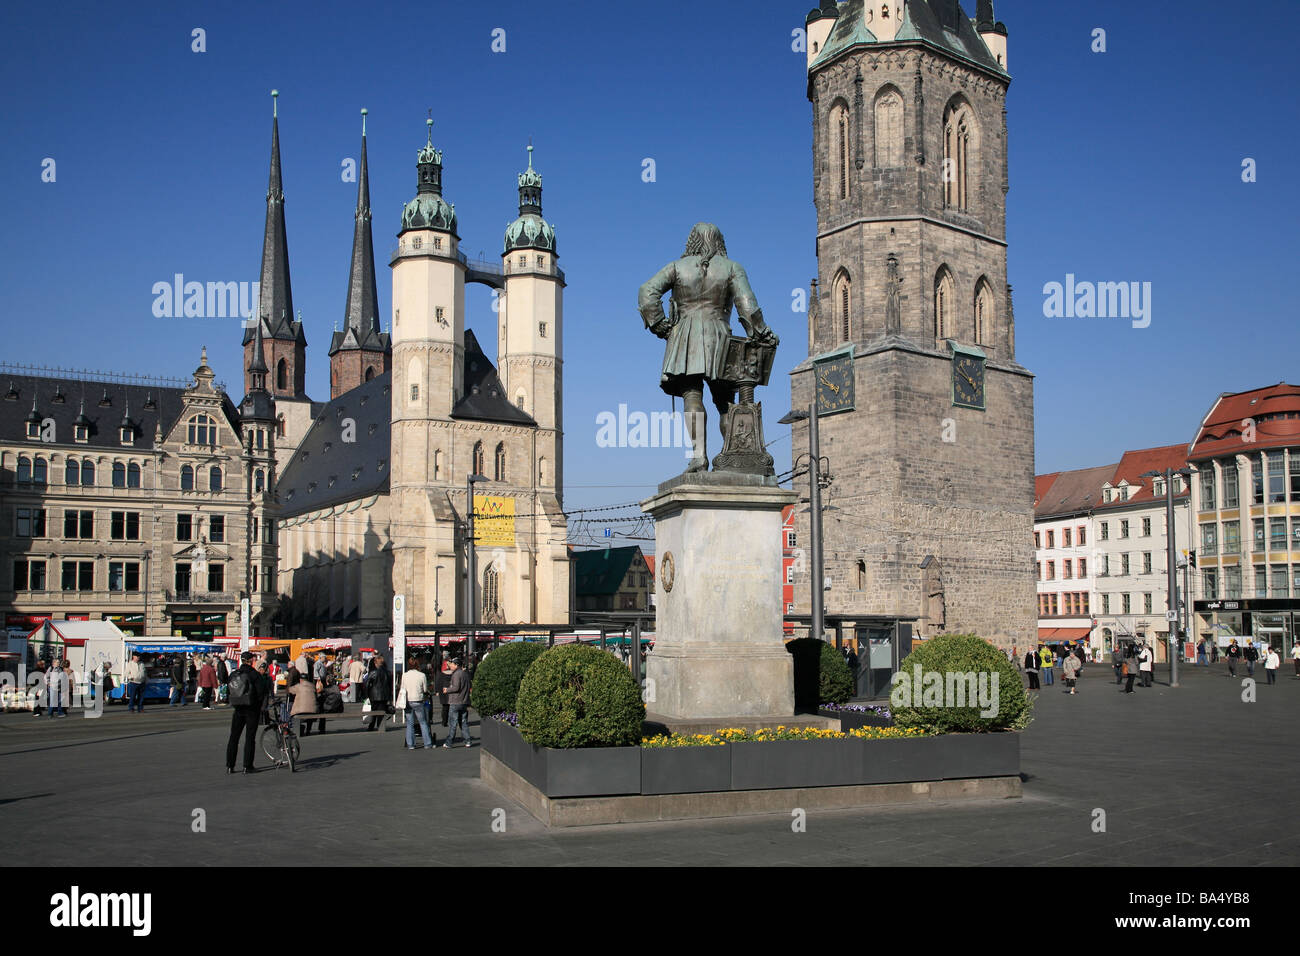 Statue de Georg Friedrich Händel, l'église du marché et la tour rouge à Halle (Saale), Allemagne Banque D'Images